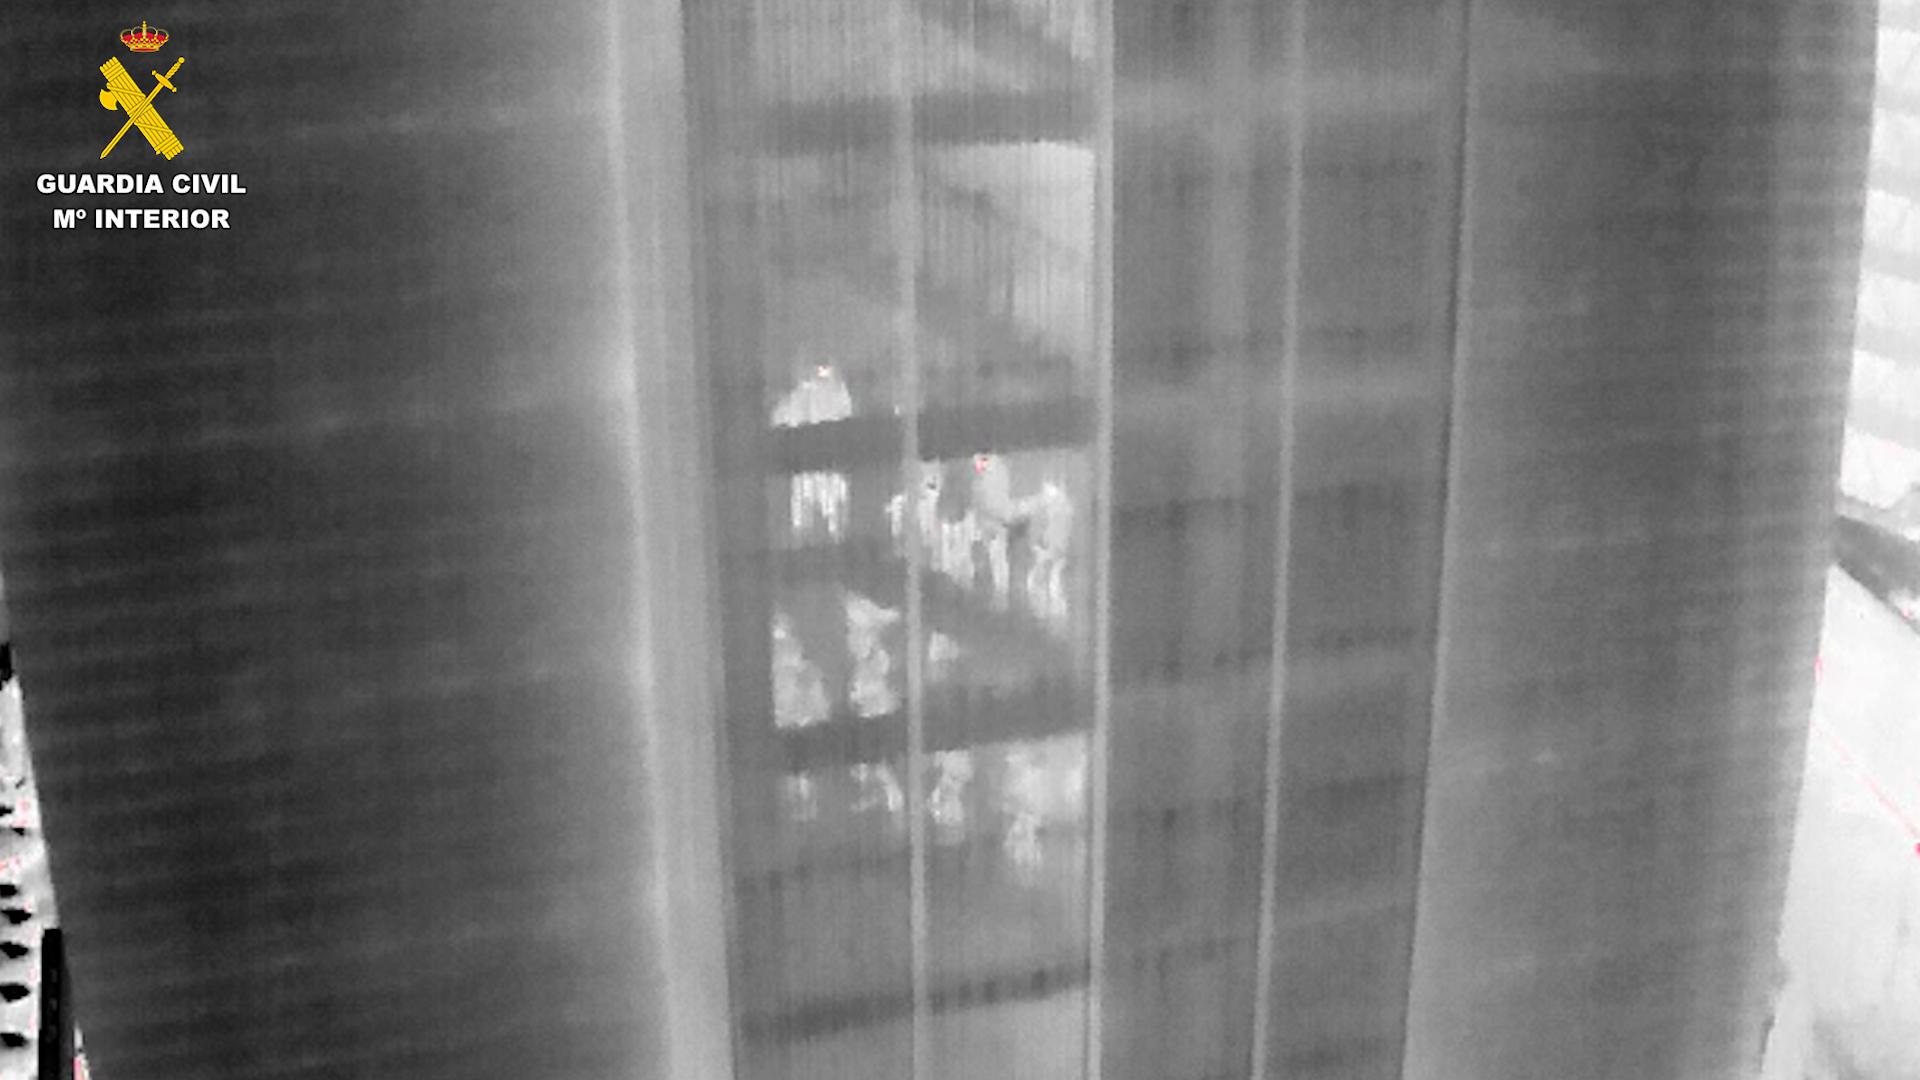 Imagen termica de los agentes dentro de un edificio antes de proceder a uno de los registros